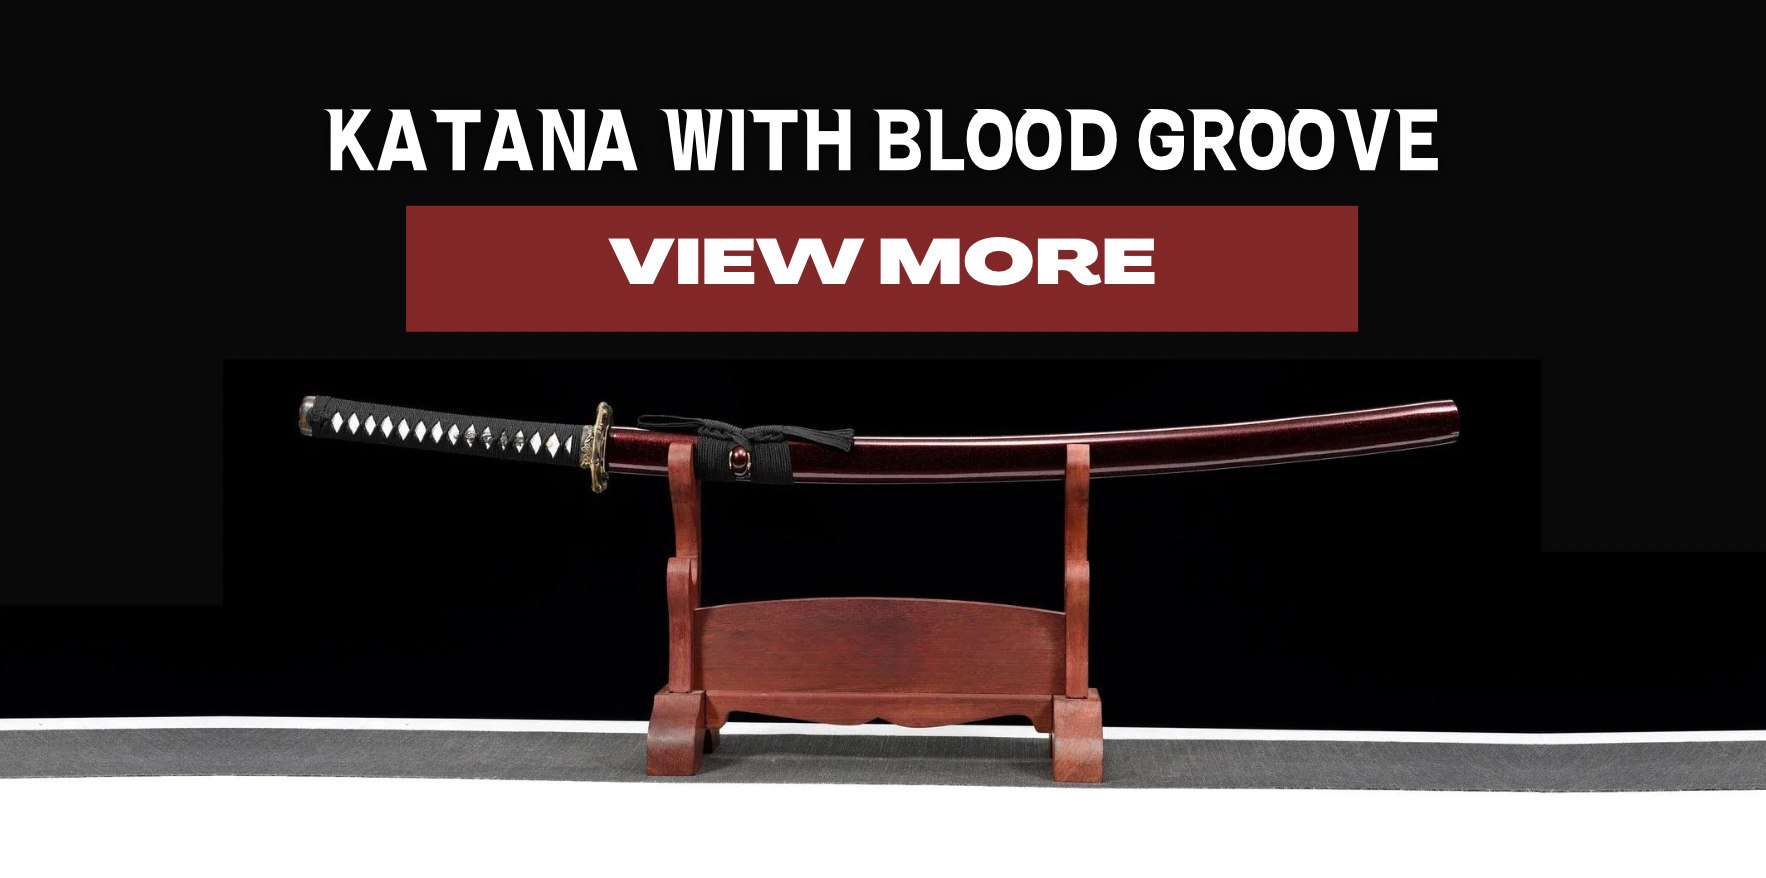 katana con surco de sangre